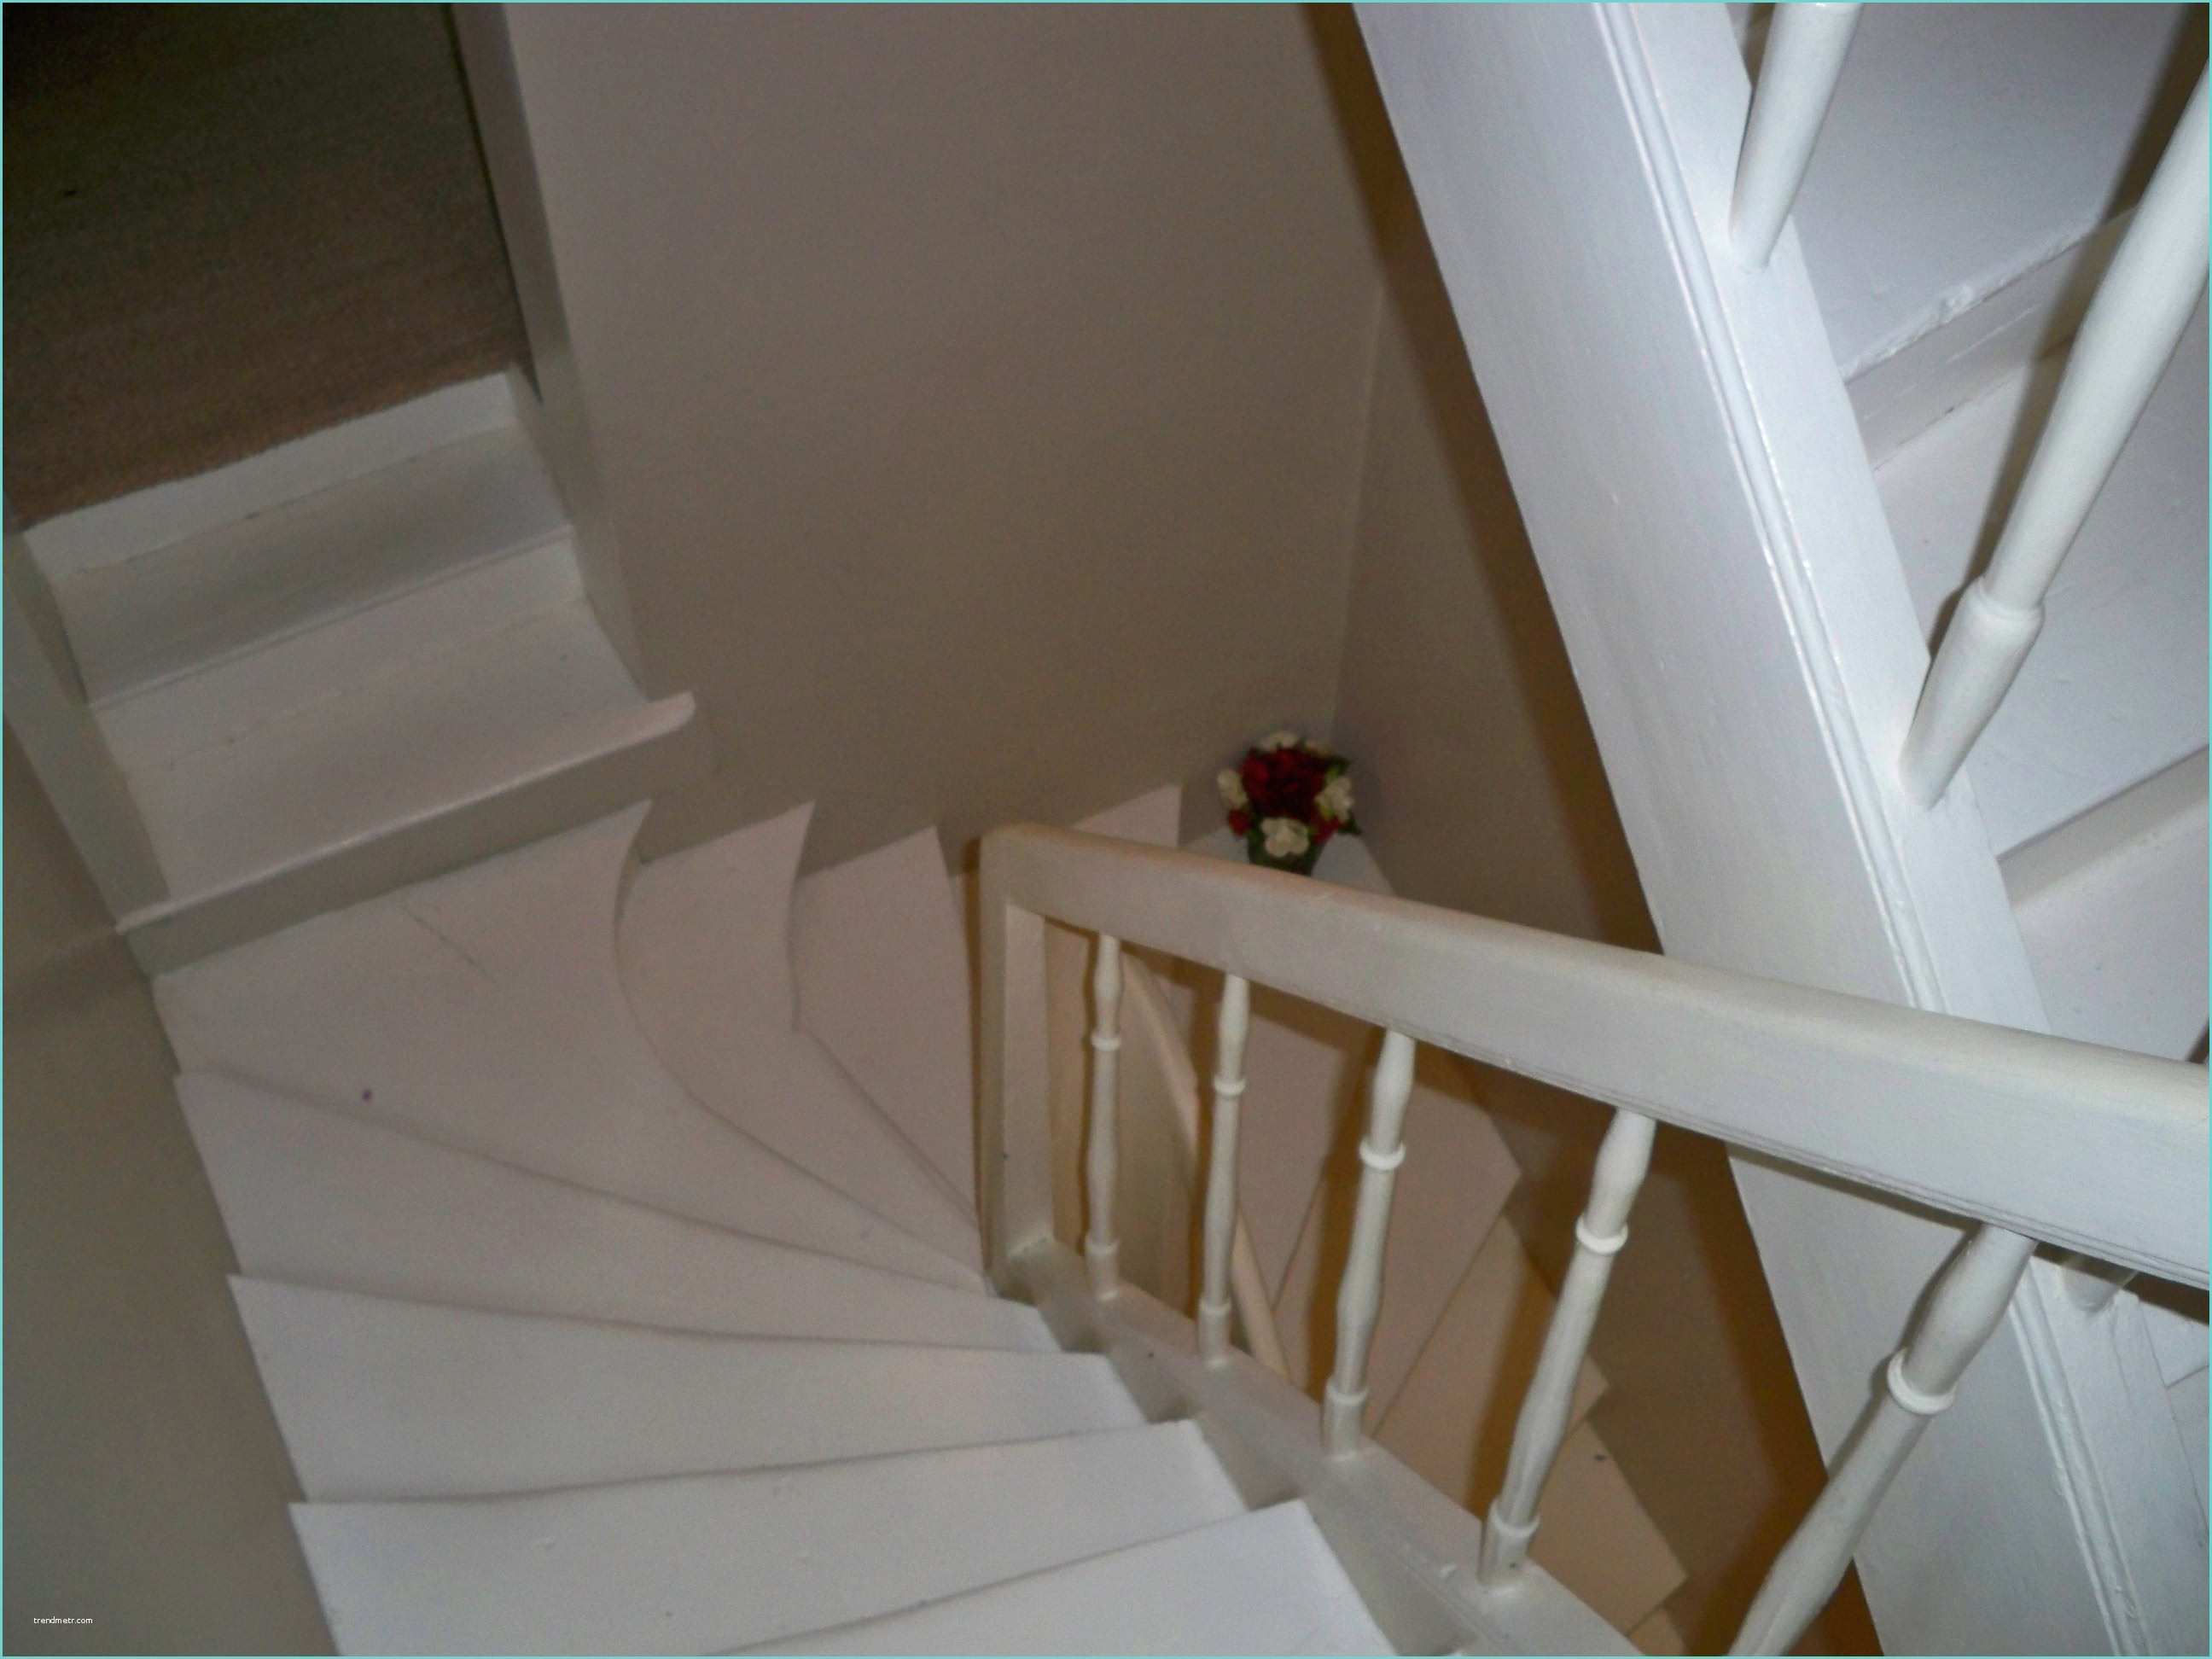 Escalier Repeint En Blanc Escalier Photo 1 2 Escalier Repeint En Blanc Et Les